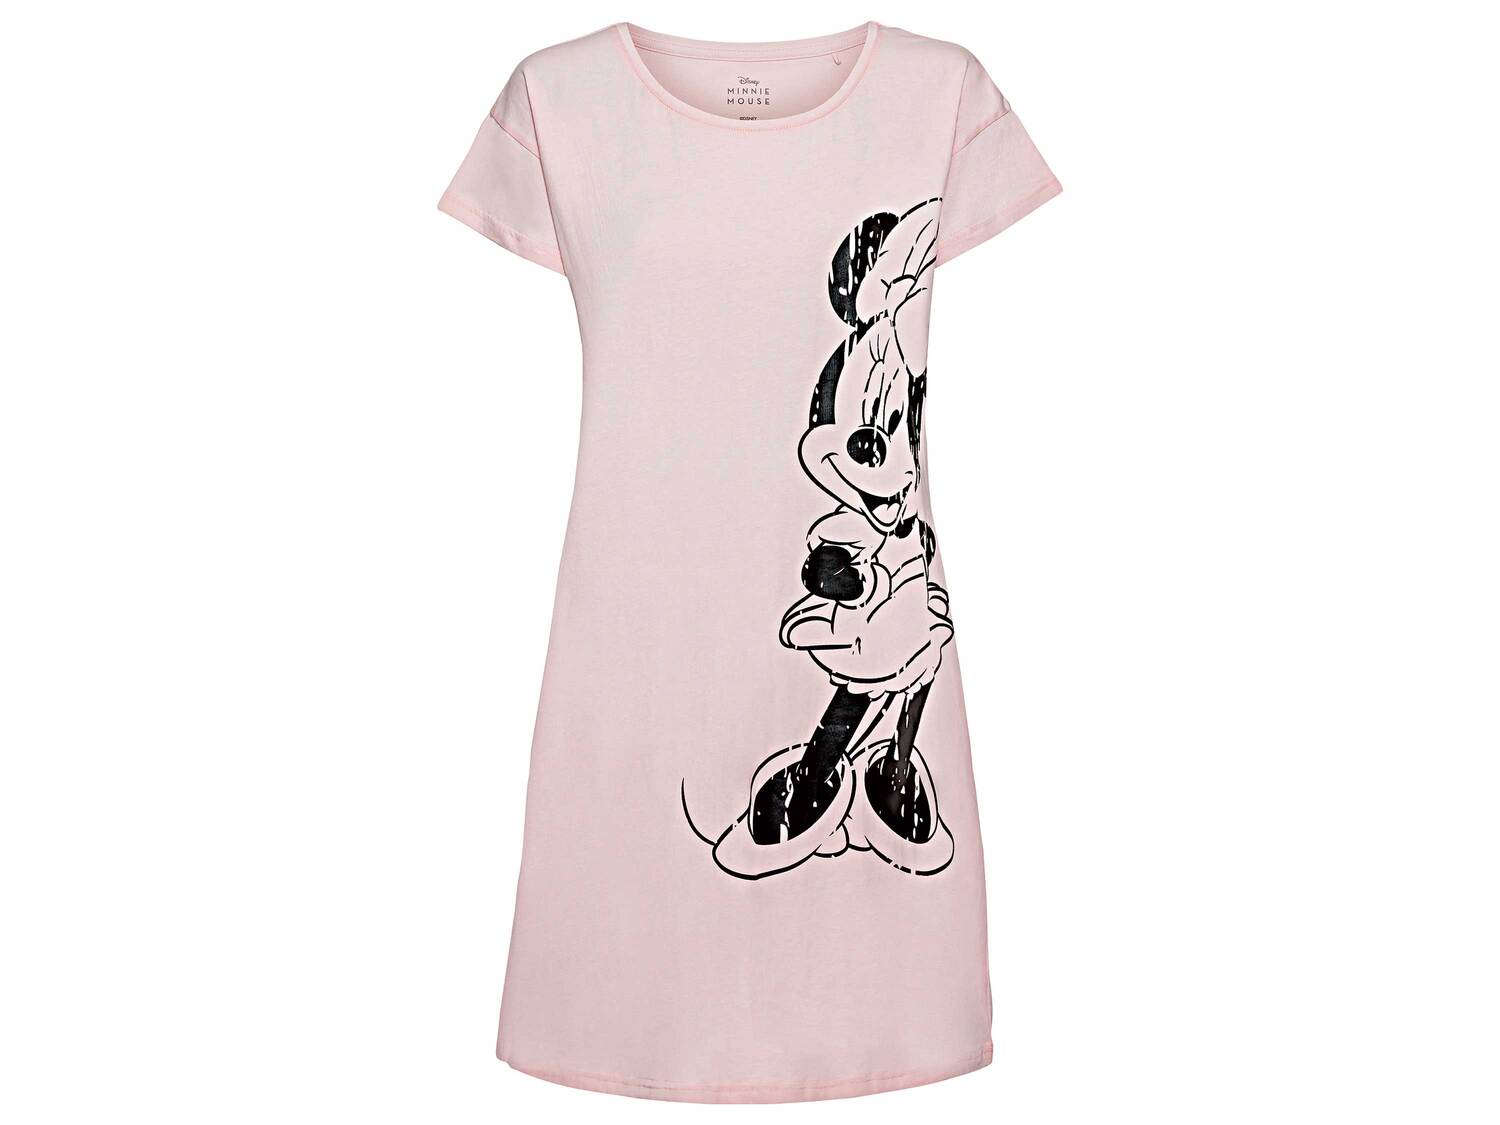 T-shirt long femme Minnie Mouse, le prix 5.99 € 
- Du S au XL selon modèle
- ...